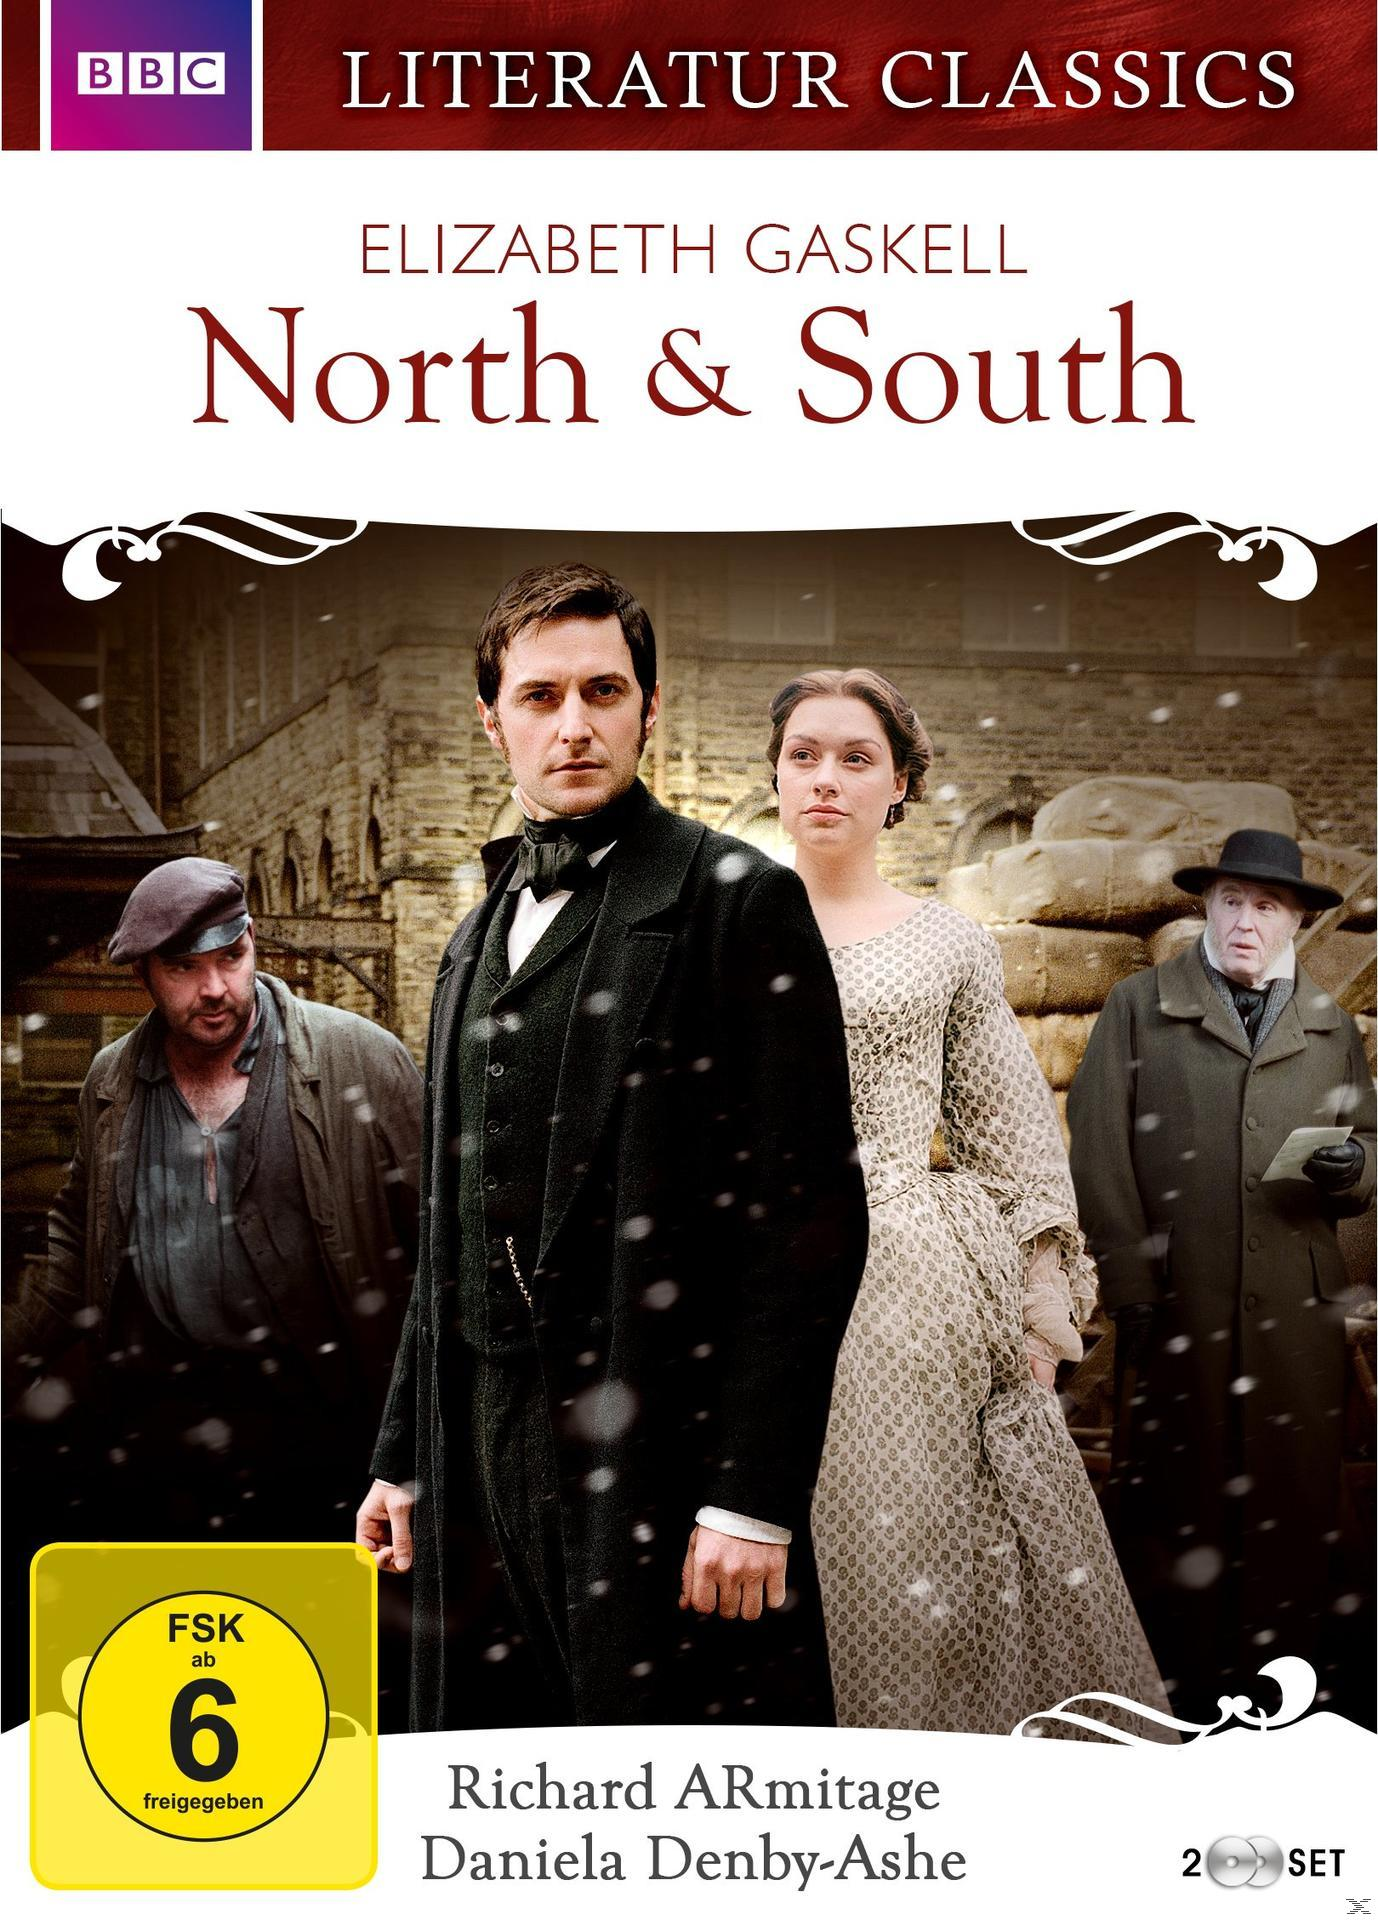 North & South (2004) Gaskell DVD - Elizabeth